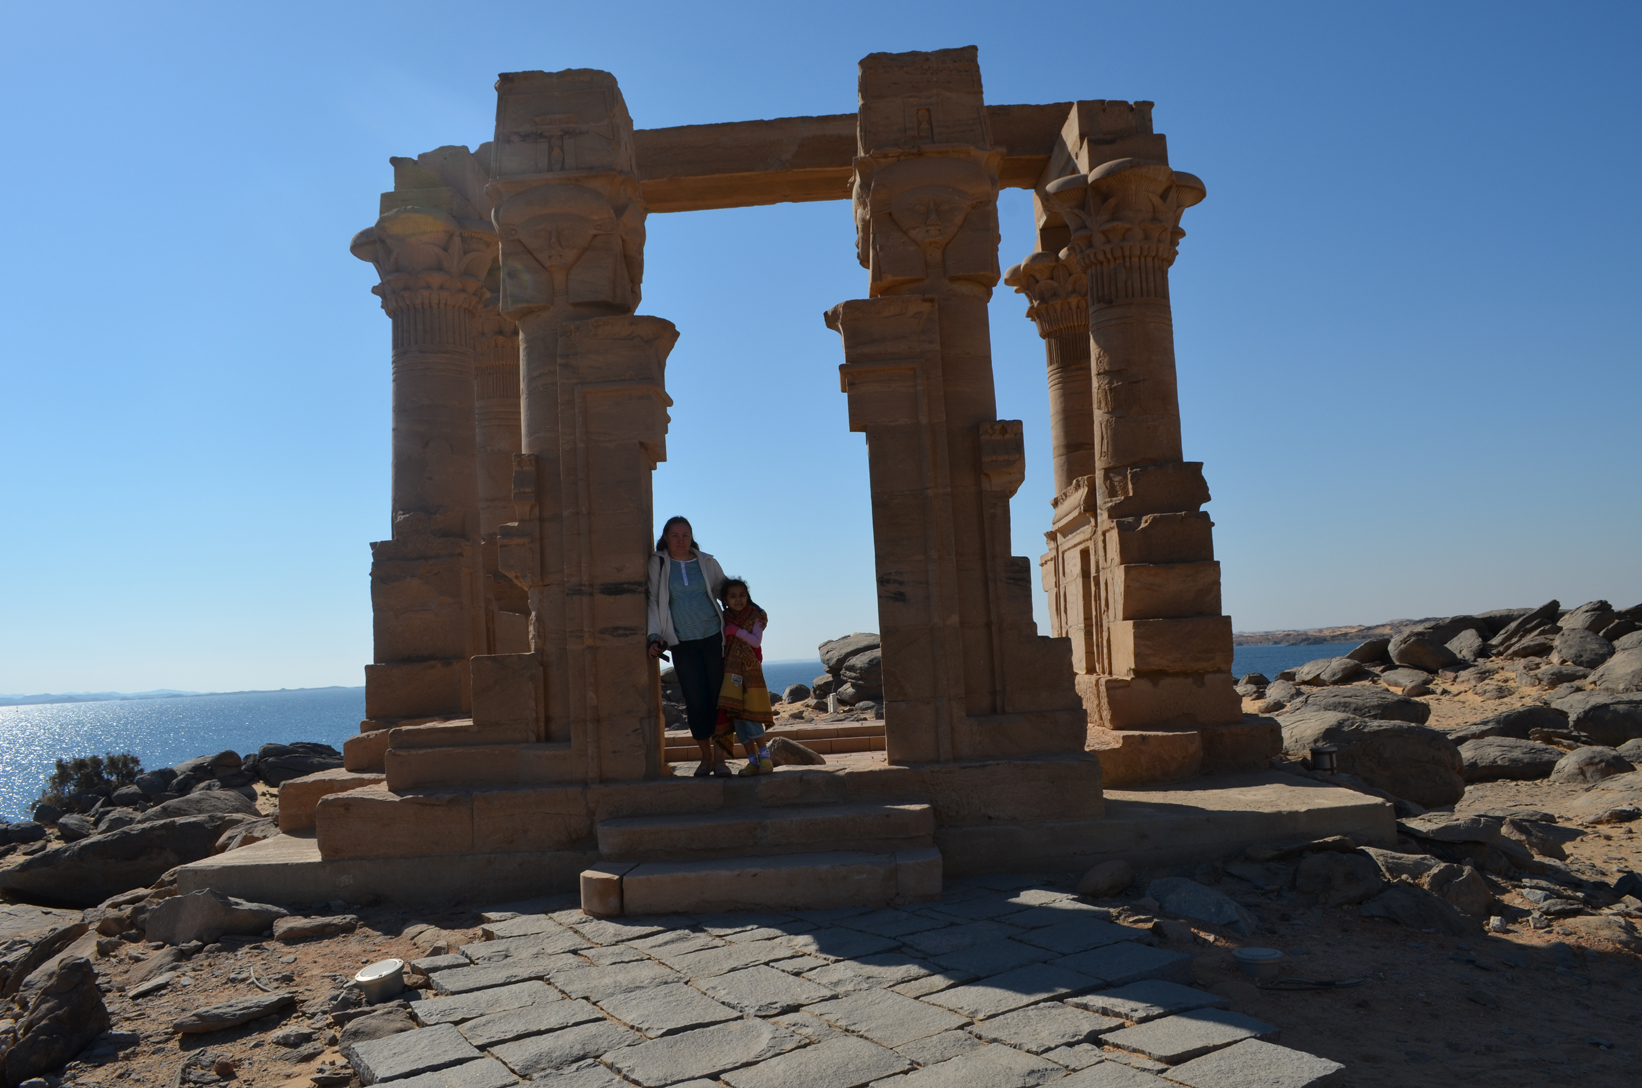 
Trojan kiosk, Philae island, Aswan